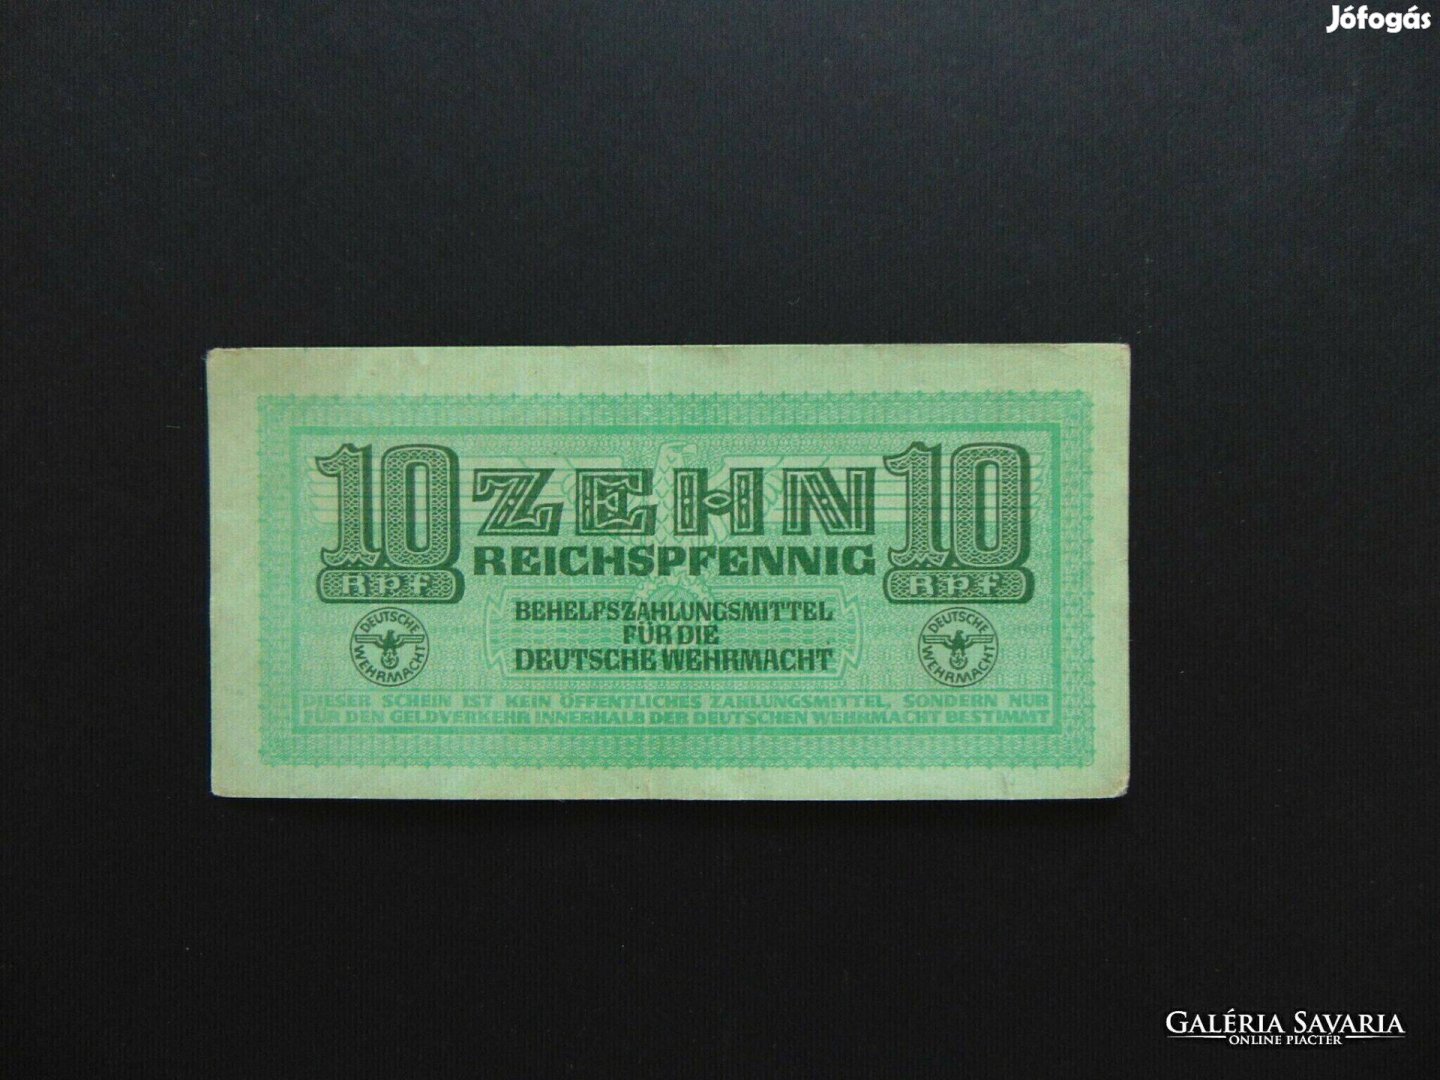 Németország 10 reichspfennig bankjegy 1944 01